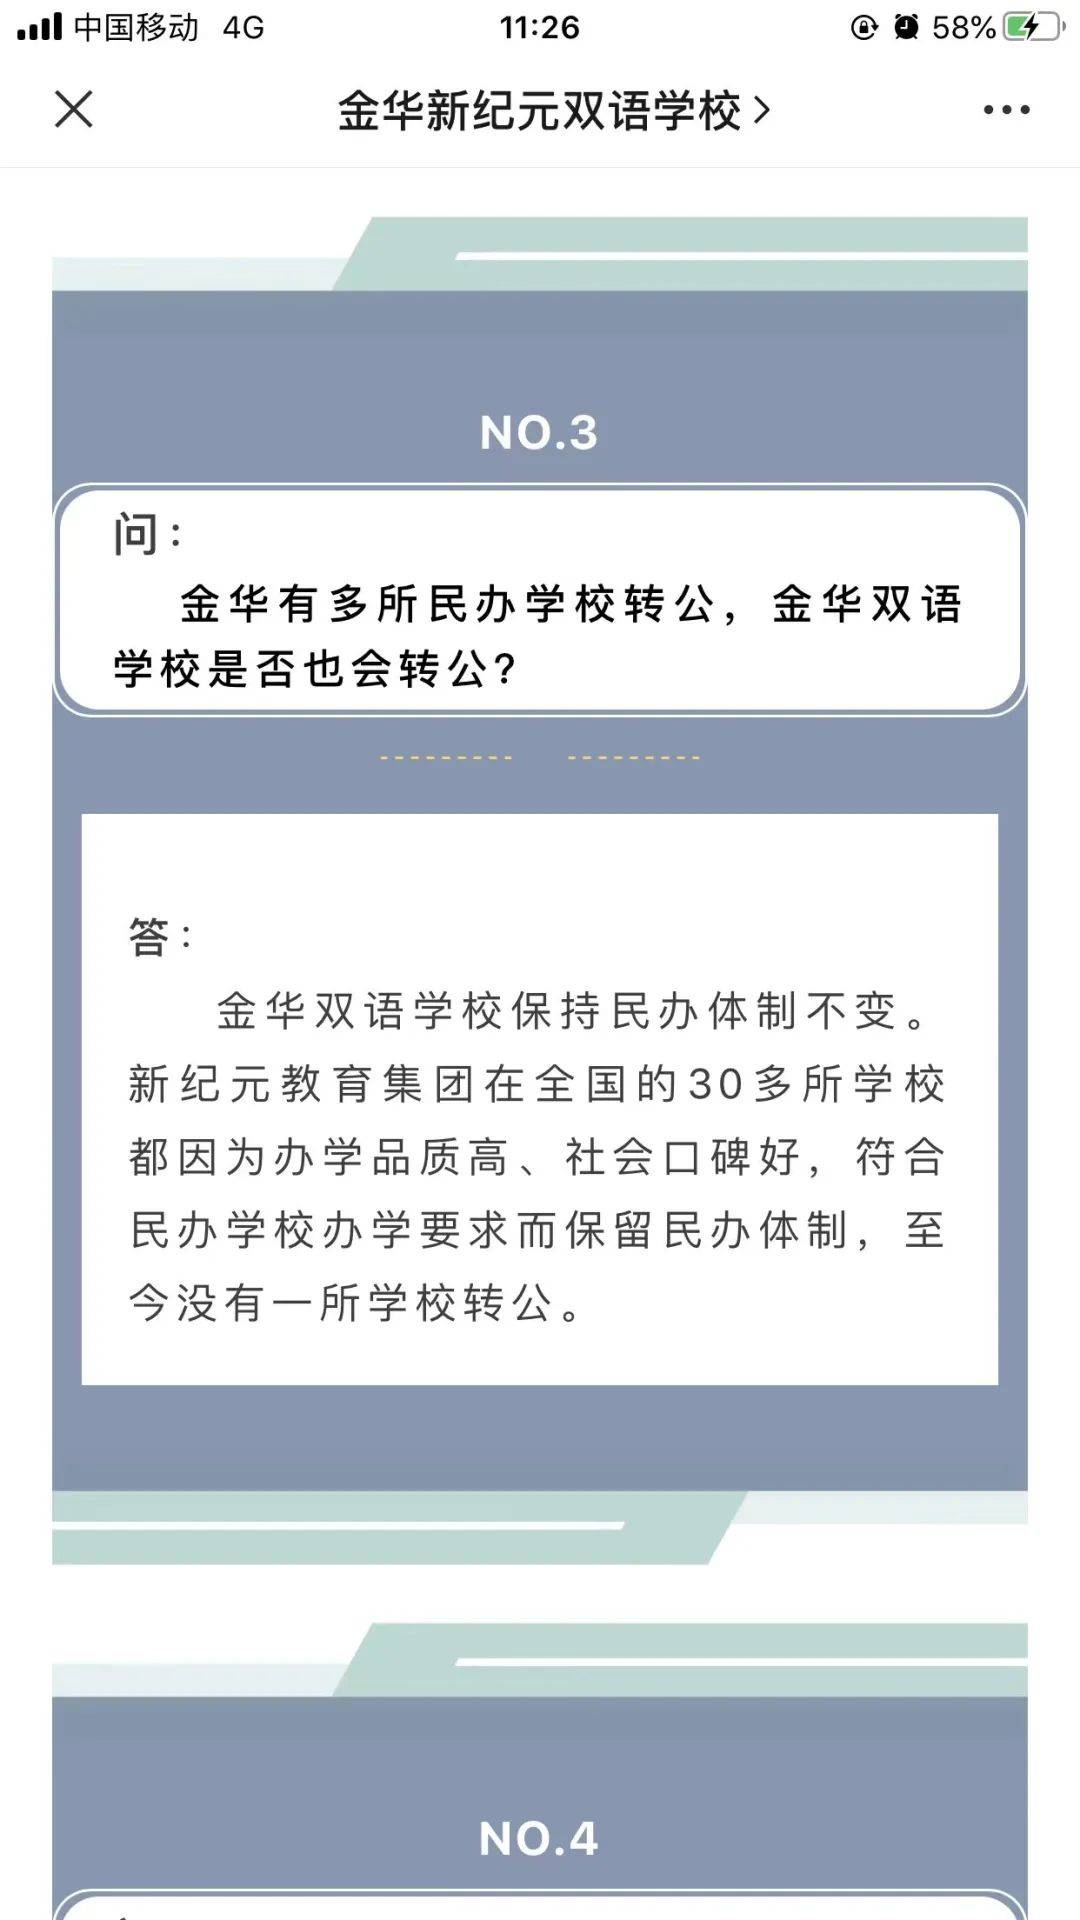 金华新纪元双语学校学生家长发请愿书，揭开民转公背后的权益失衡 